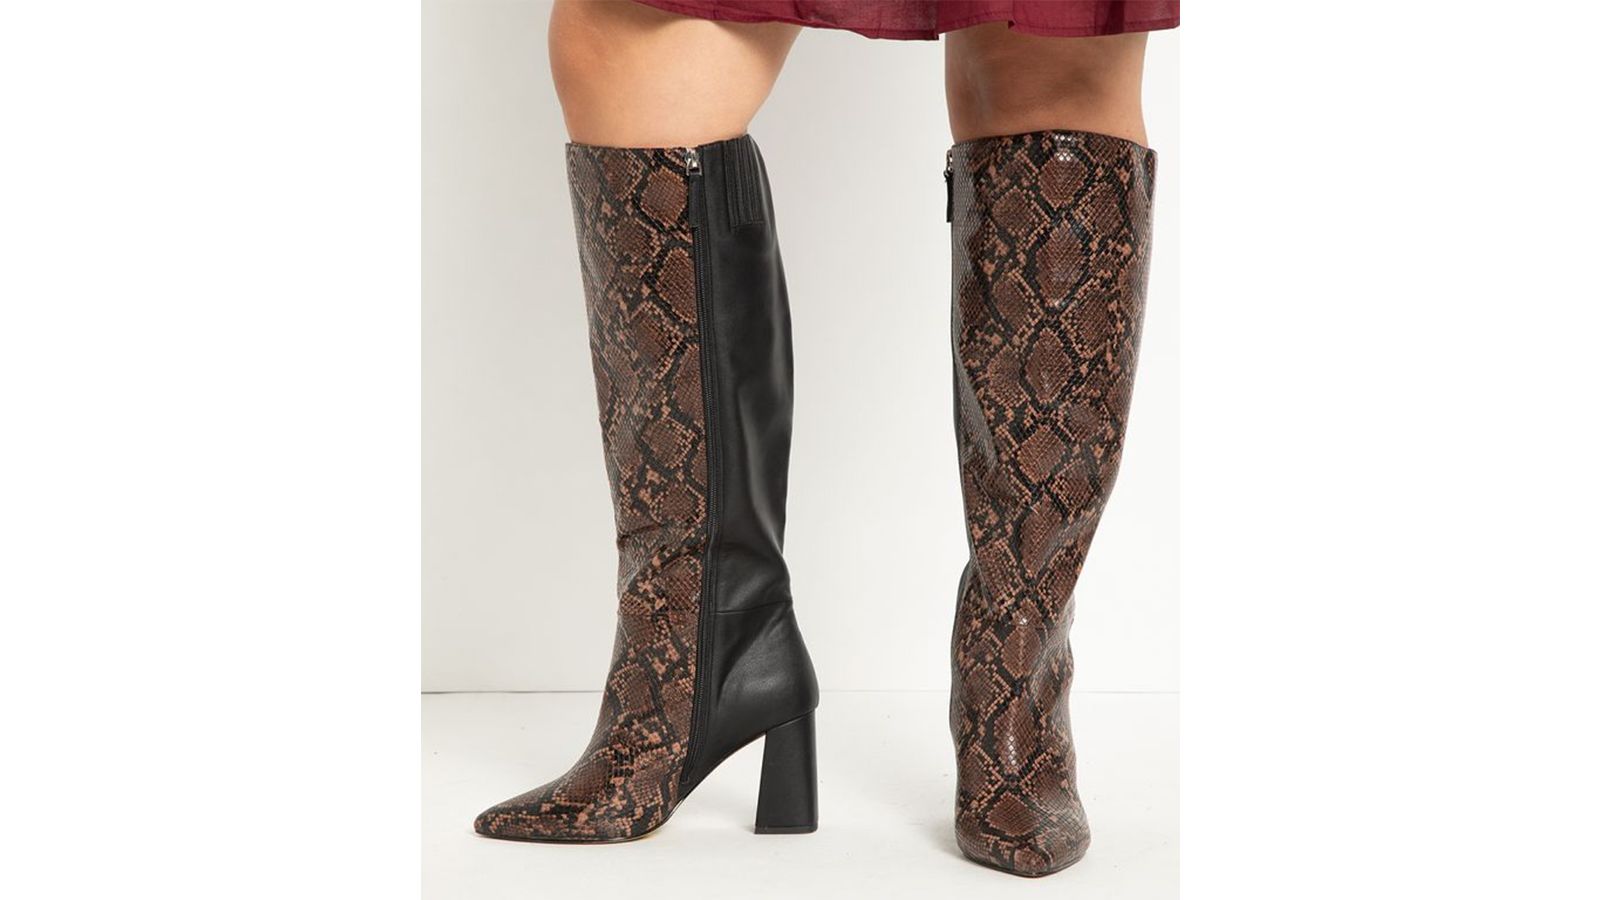 New Women's Fashion Dress Low Heel Zipper Mid Calf Knee High Boots 